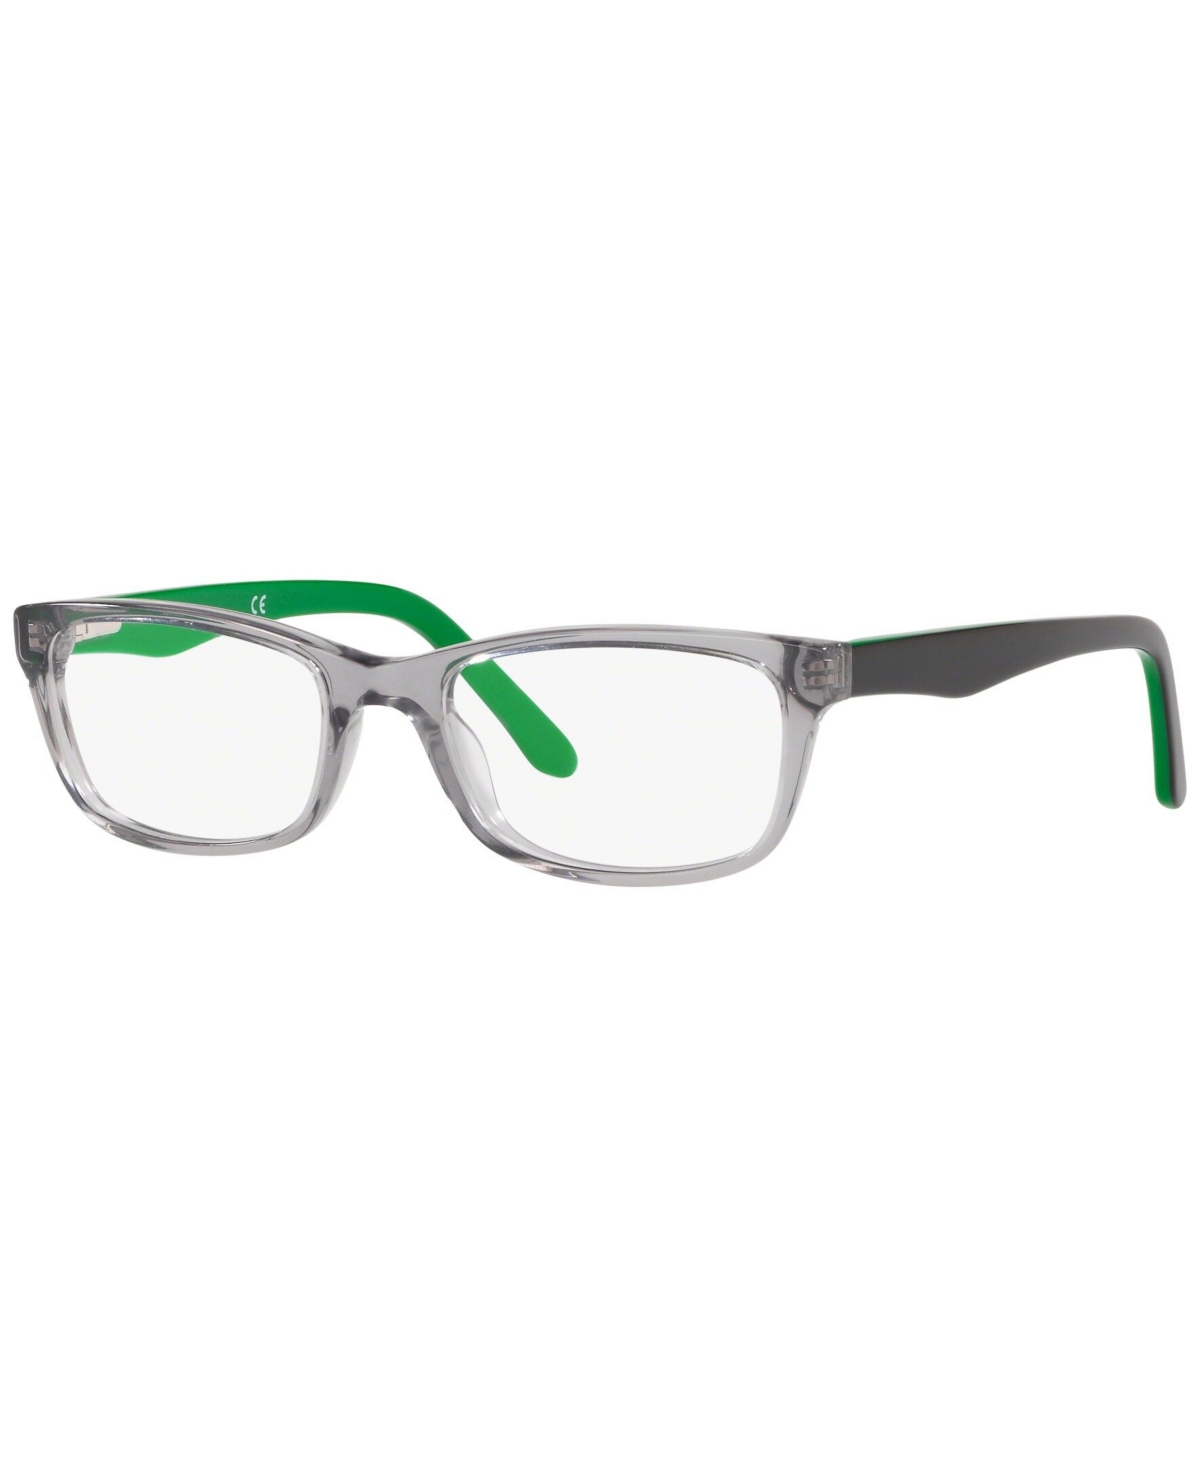 SF1845 Men's Square Eyeglasses - Gray